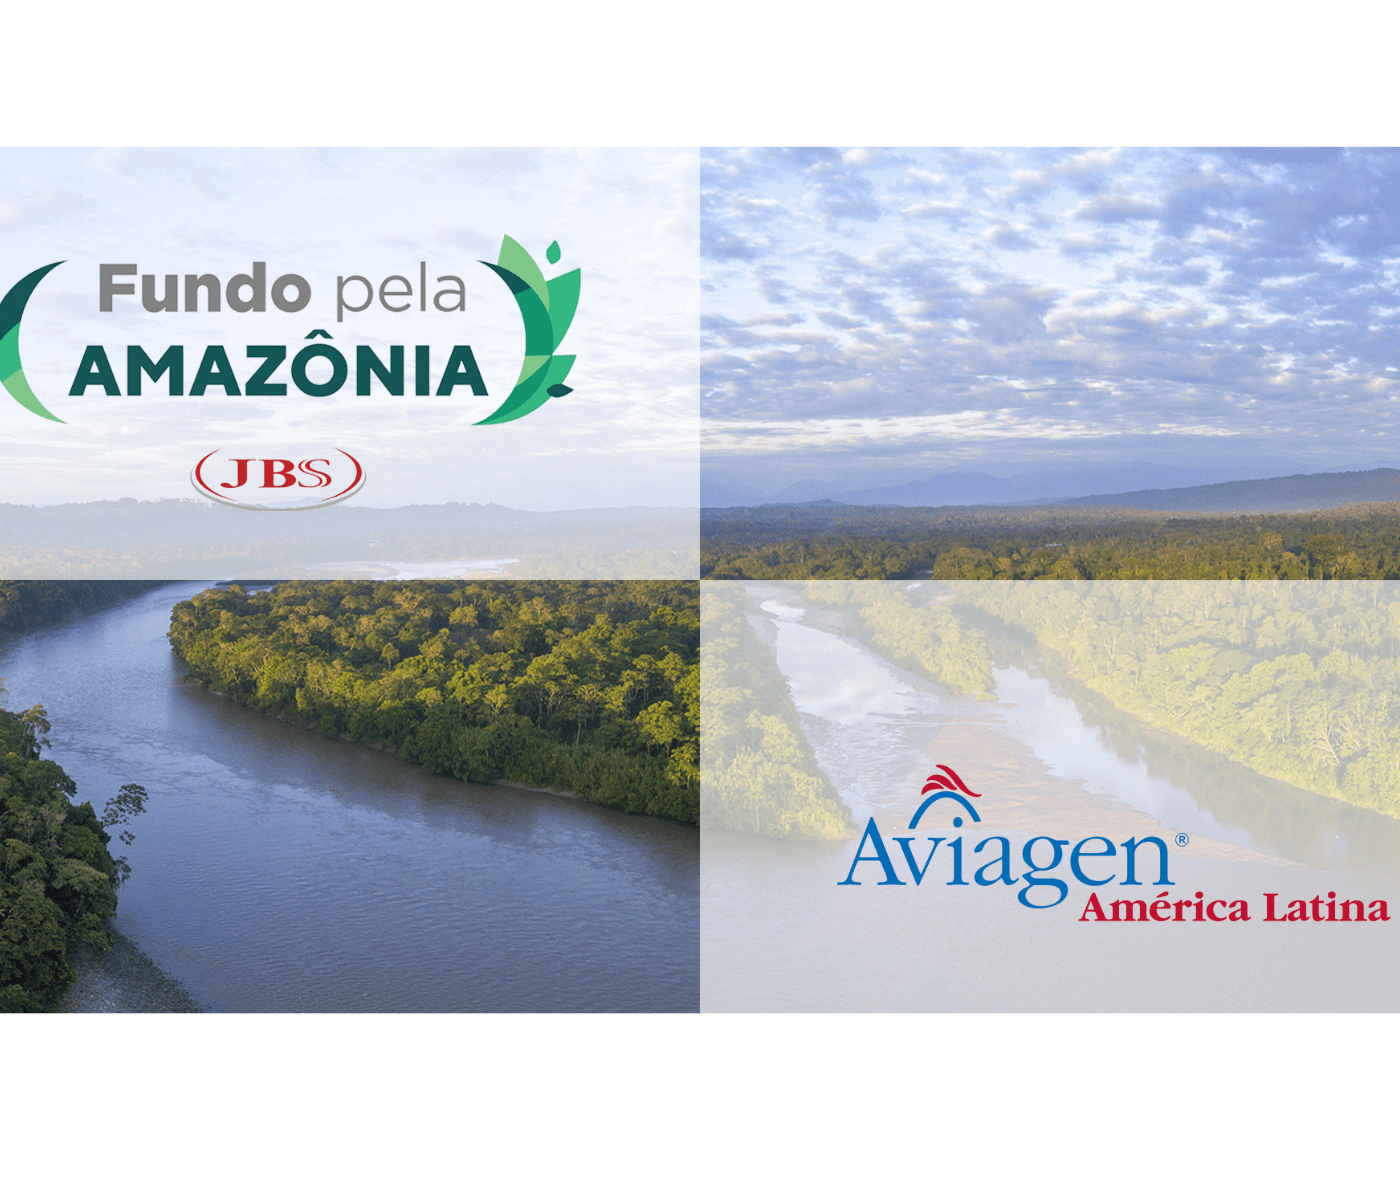 Suporte da Aviagen América Latina ao “Fundo JBS pela Amazônia” promove o crescimento sustentável do bioma